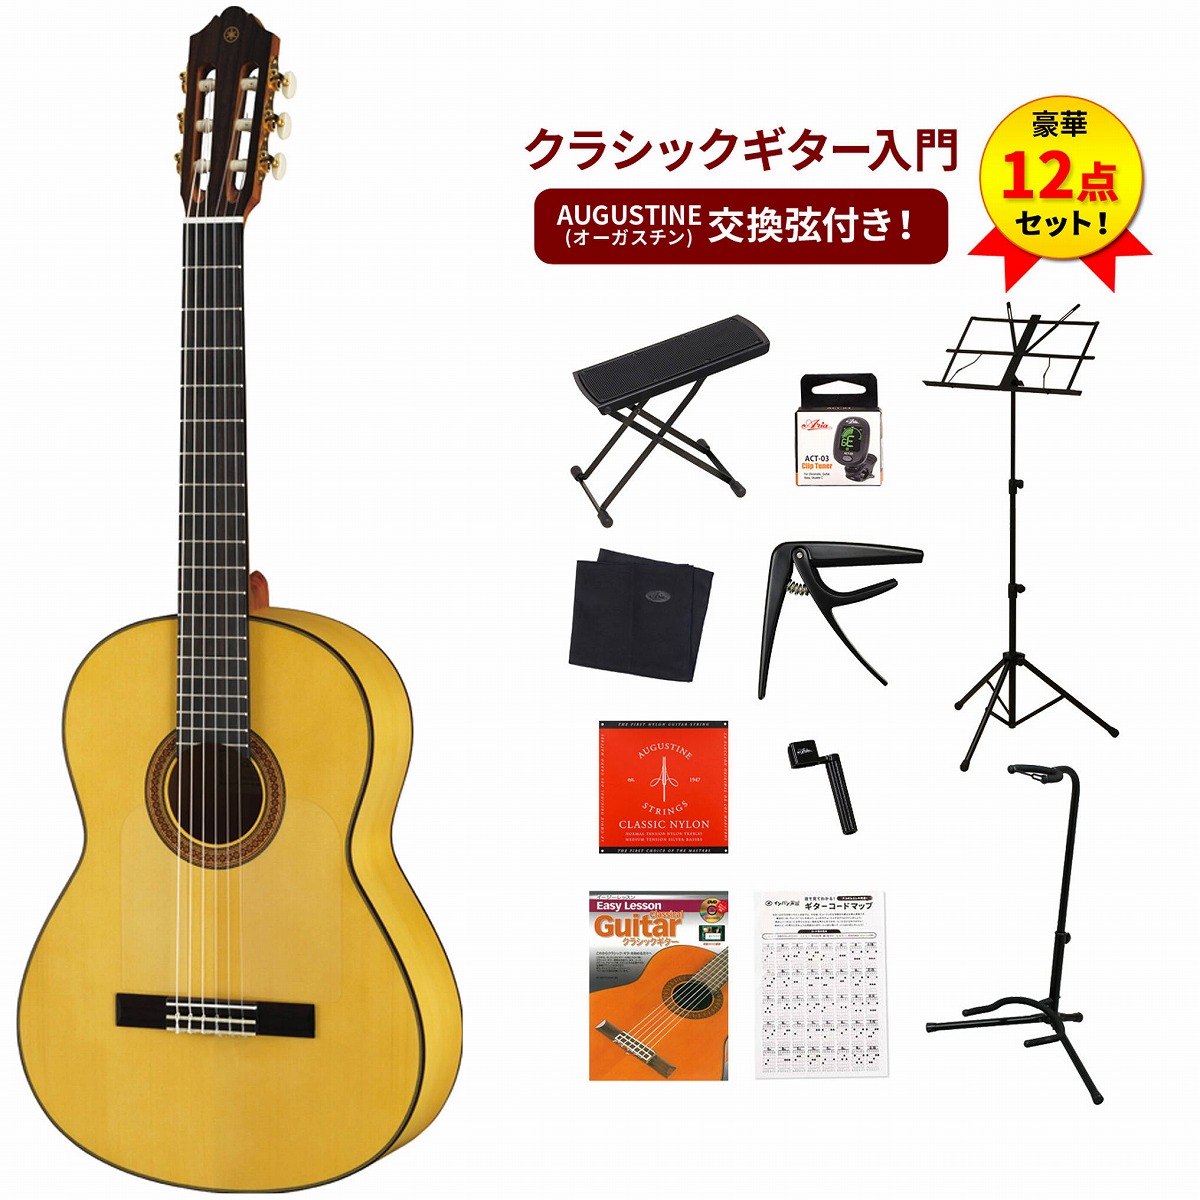 ヤマハCG182SFフラメンコギター